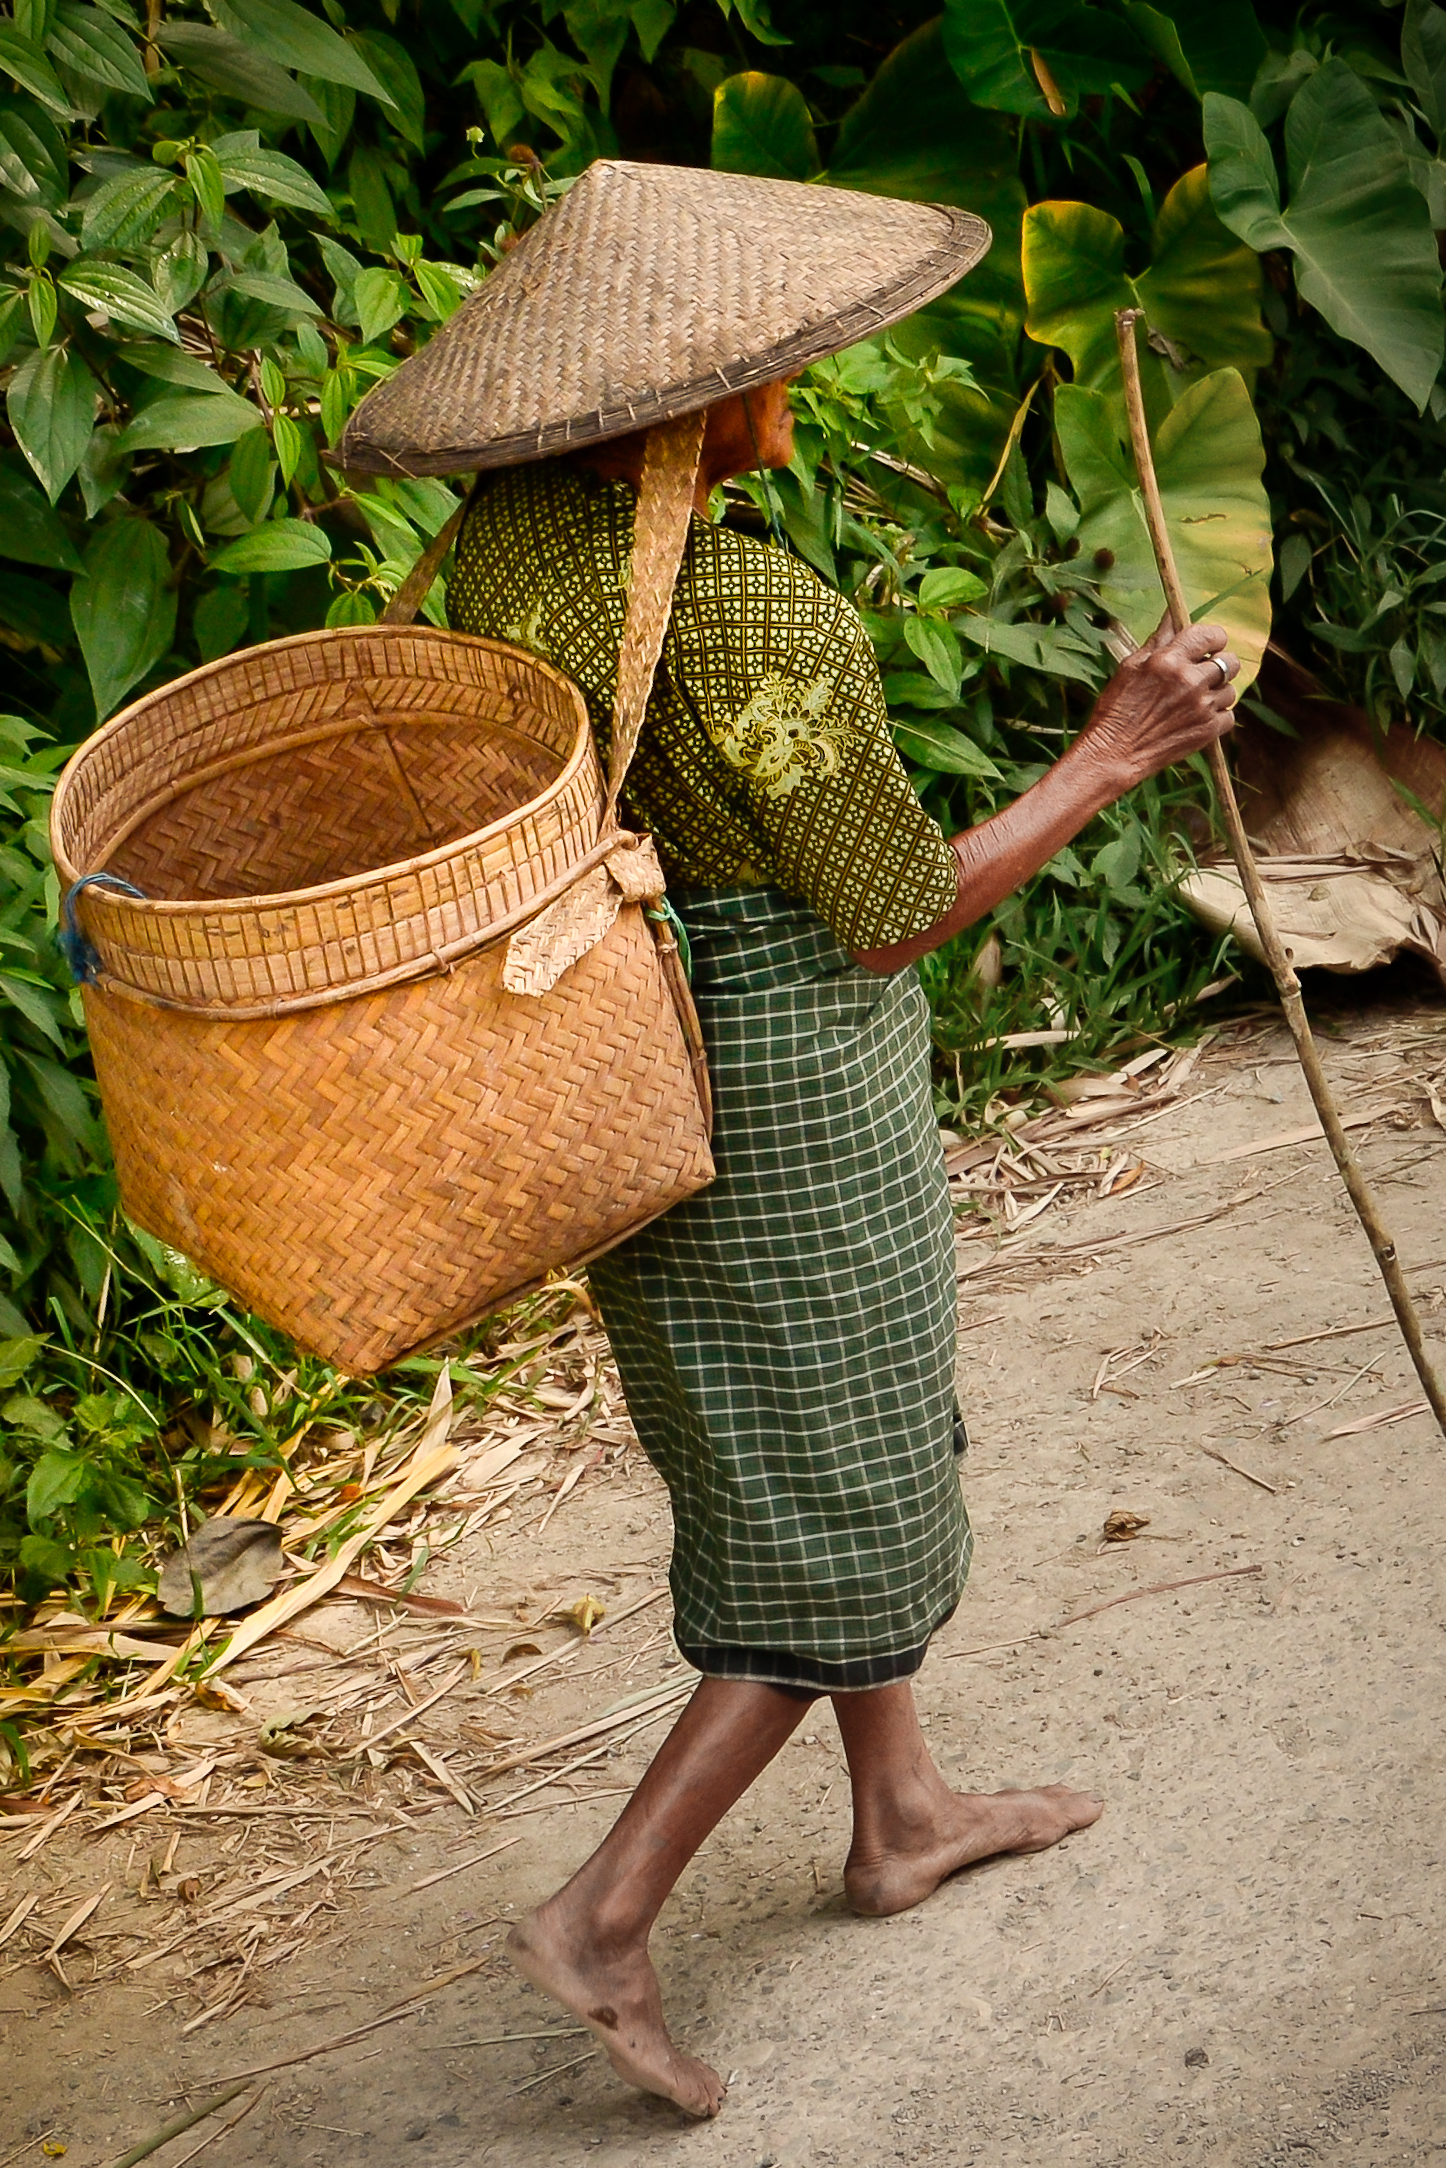 Toraja woman in Indonesia.